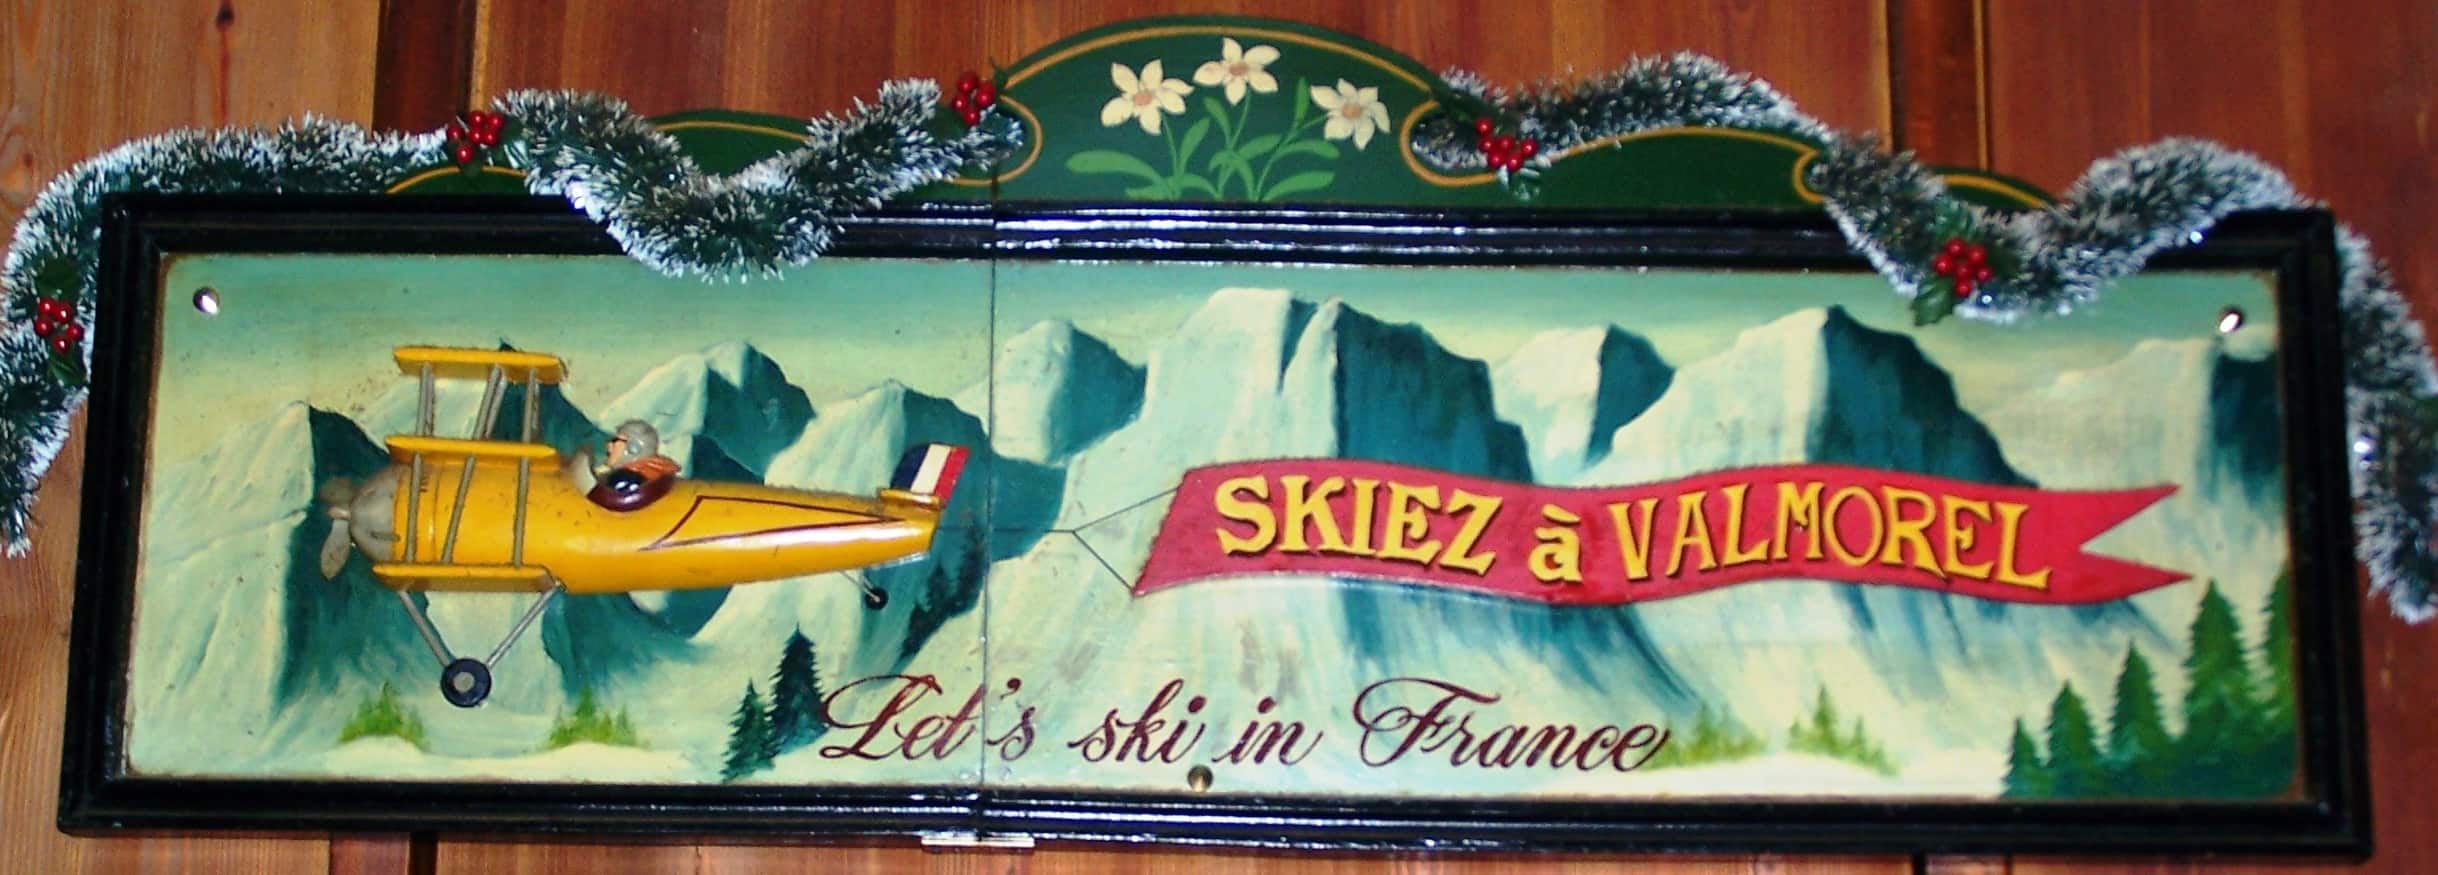 Let's ski in France